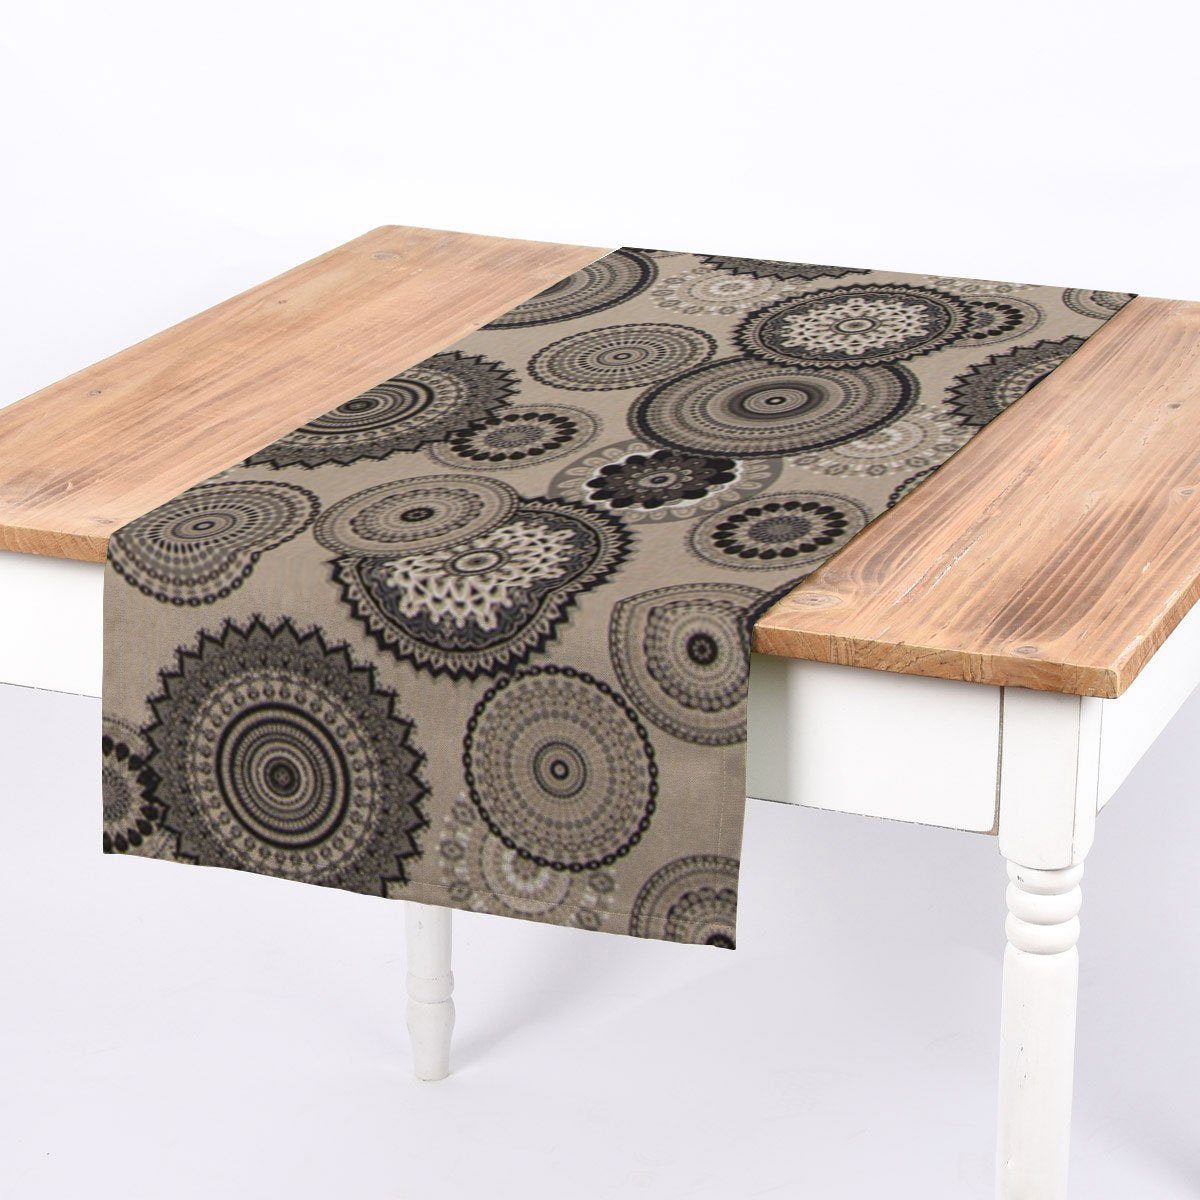 SCHÖNER LEBEN. Tischläufer SCHÖNER LEBEN. Tischläufer Mandalas natur grau 40x160cm, handmade